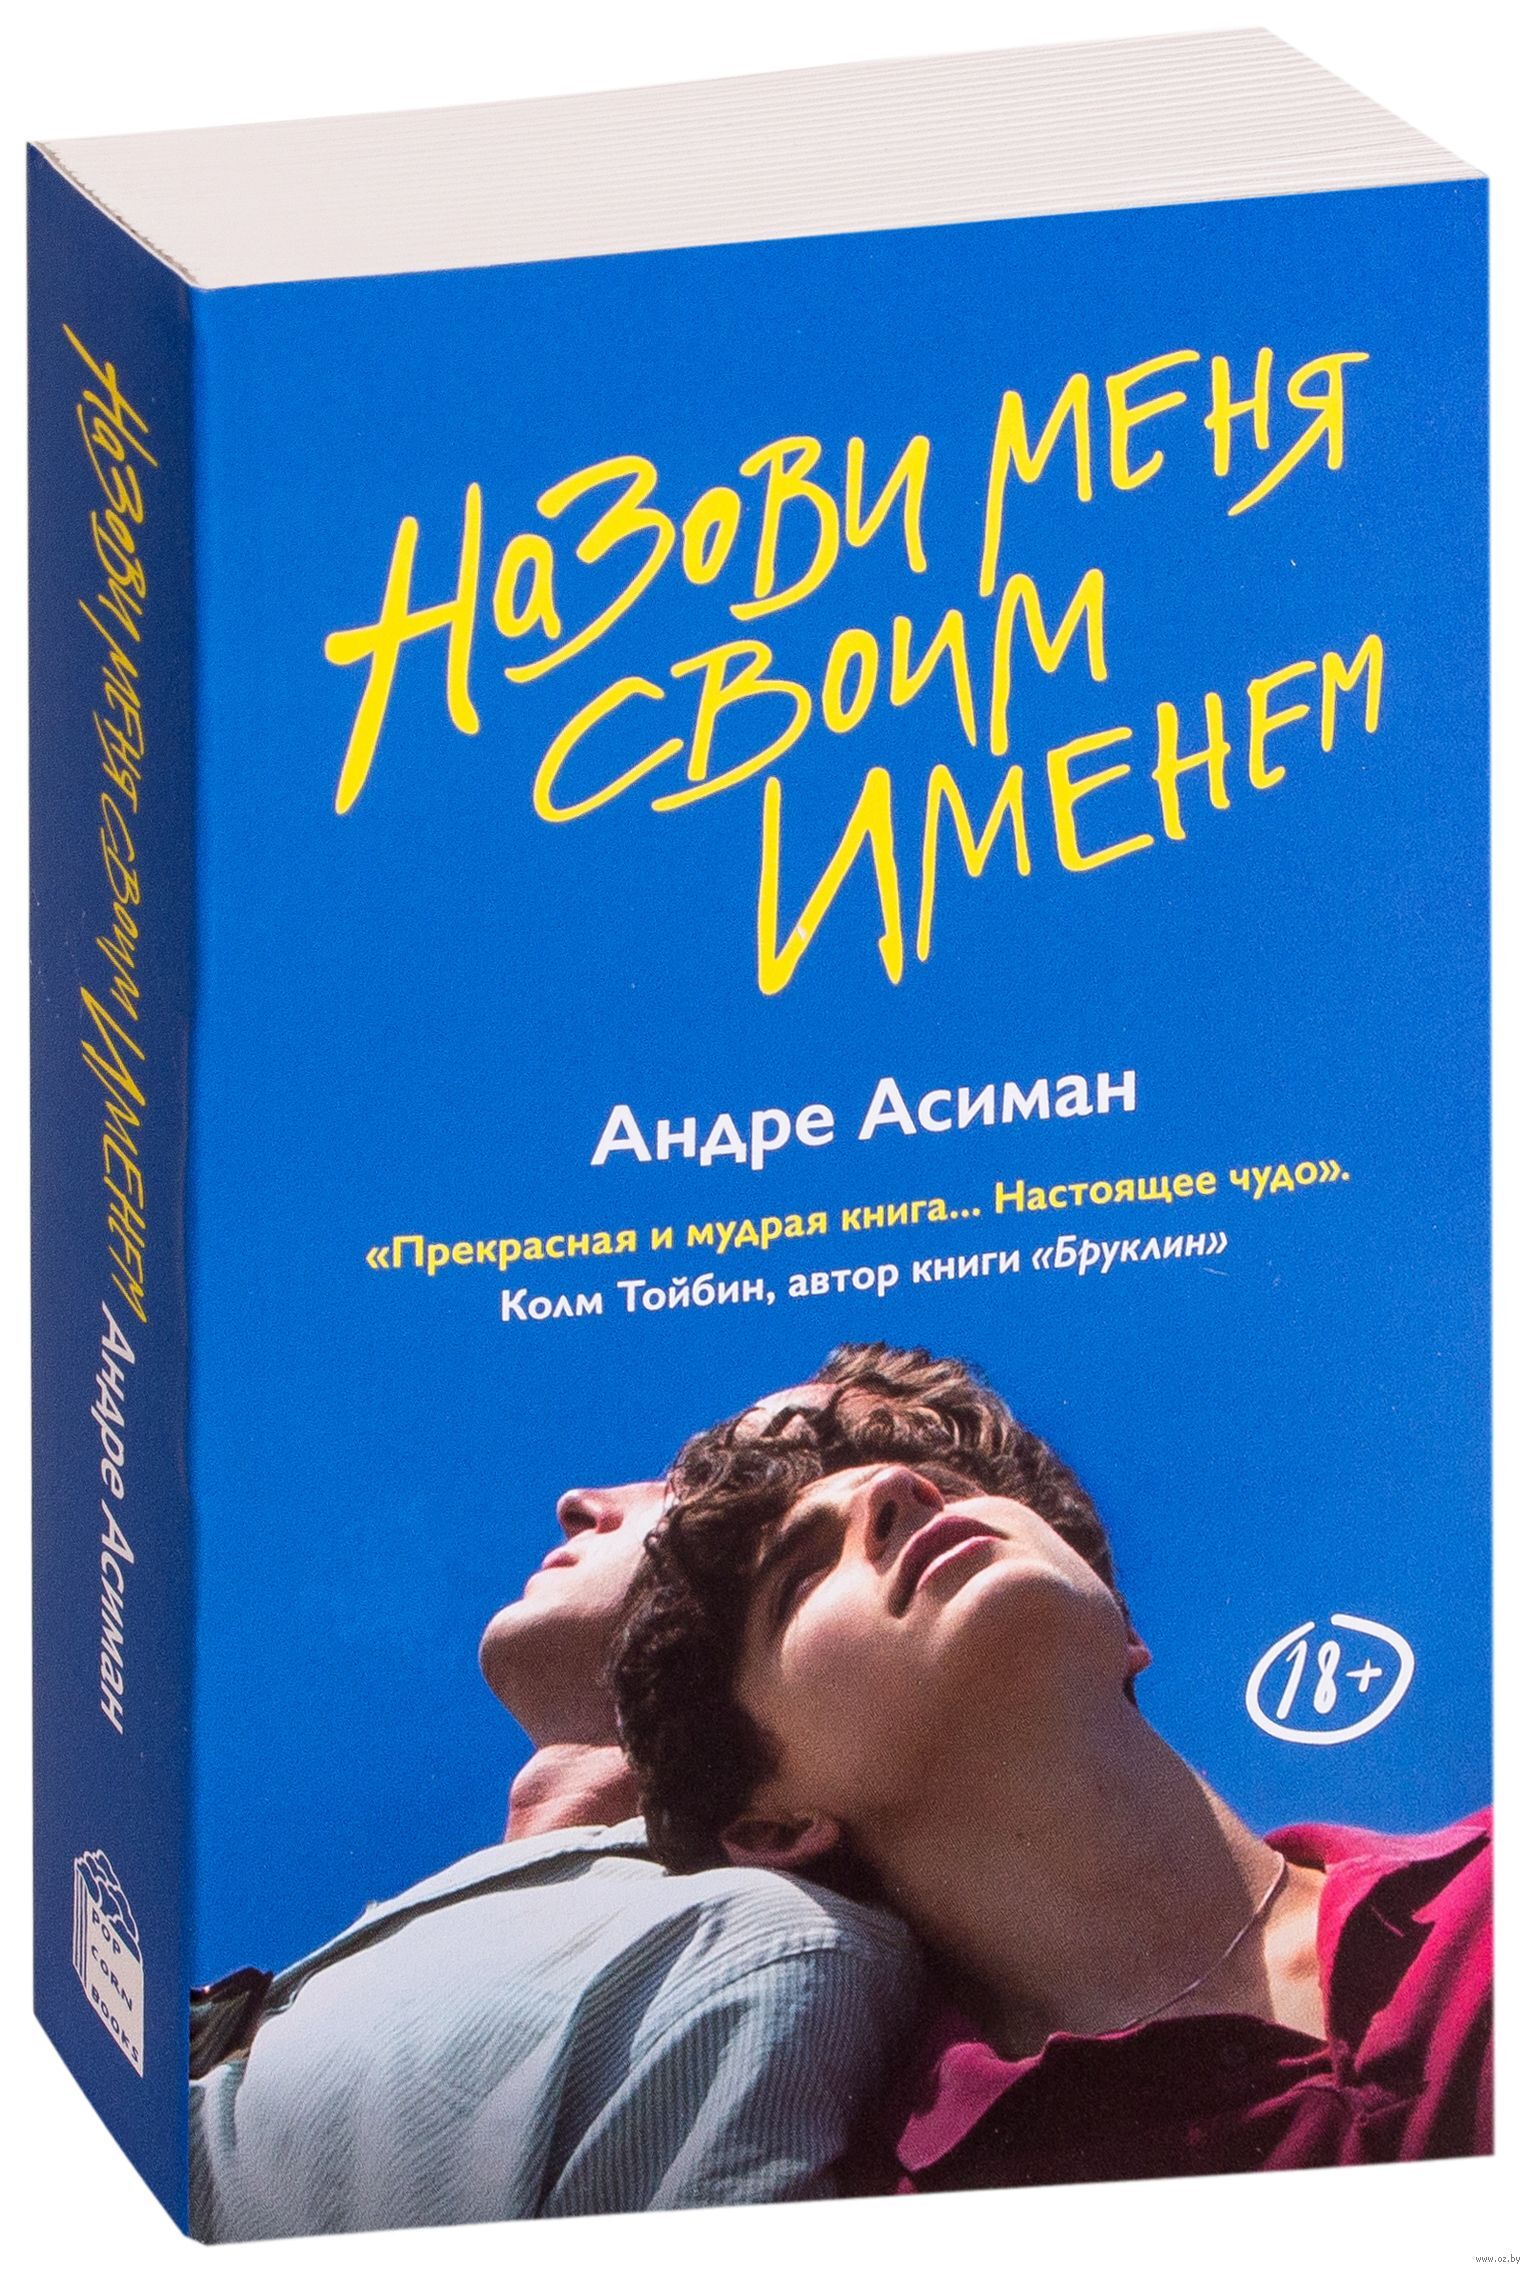 Найди меня андре. Андре Асиман назови меня своим именем. Зови меня своим именем Андре Асиман книга. Обложка книги Андре Асиман назови меня своим именем. Назови меня книга.